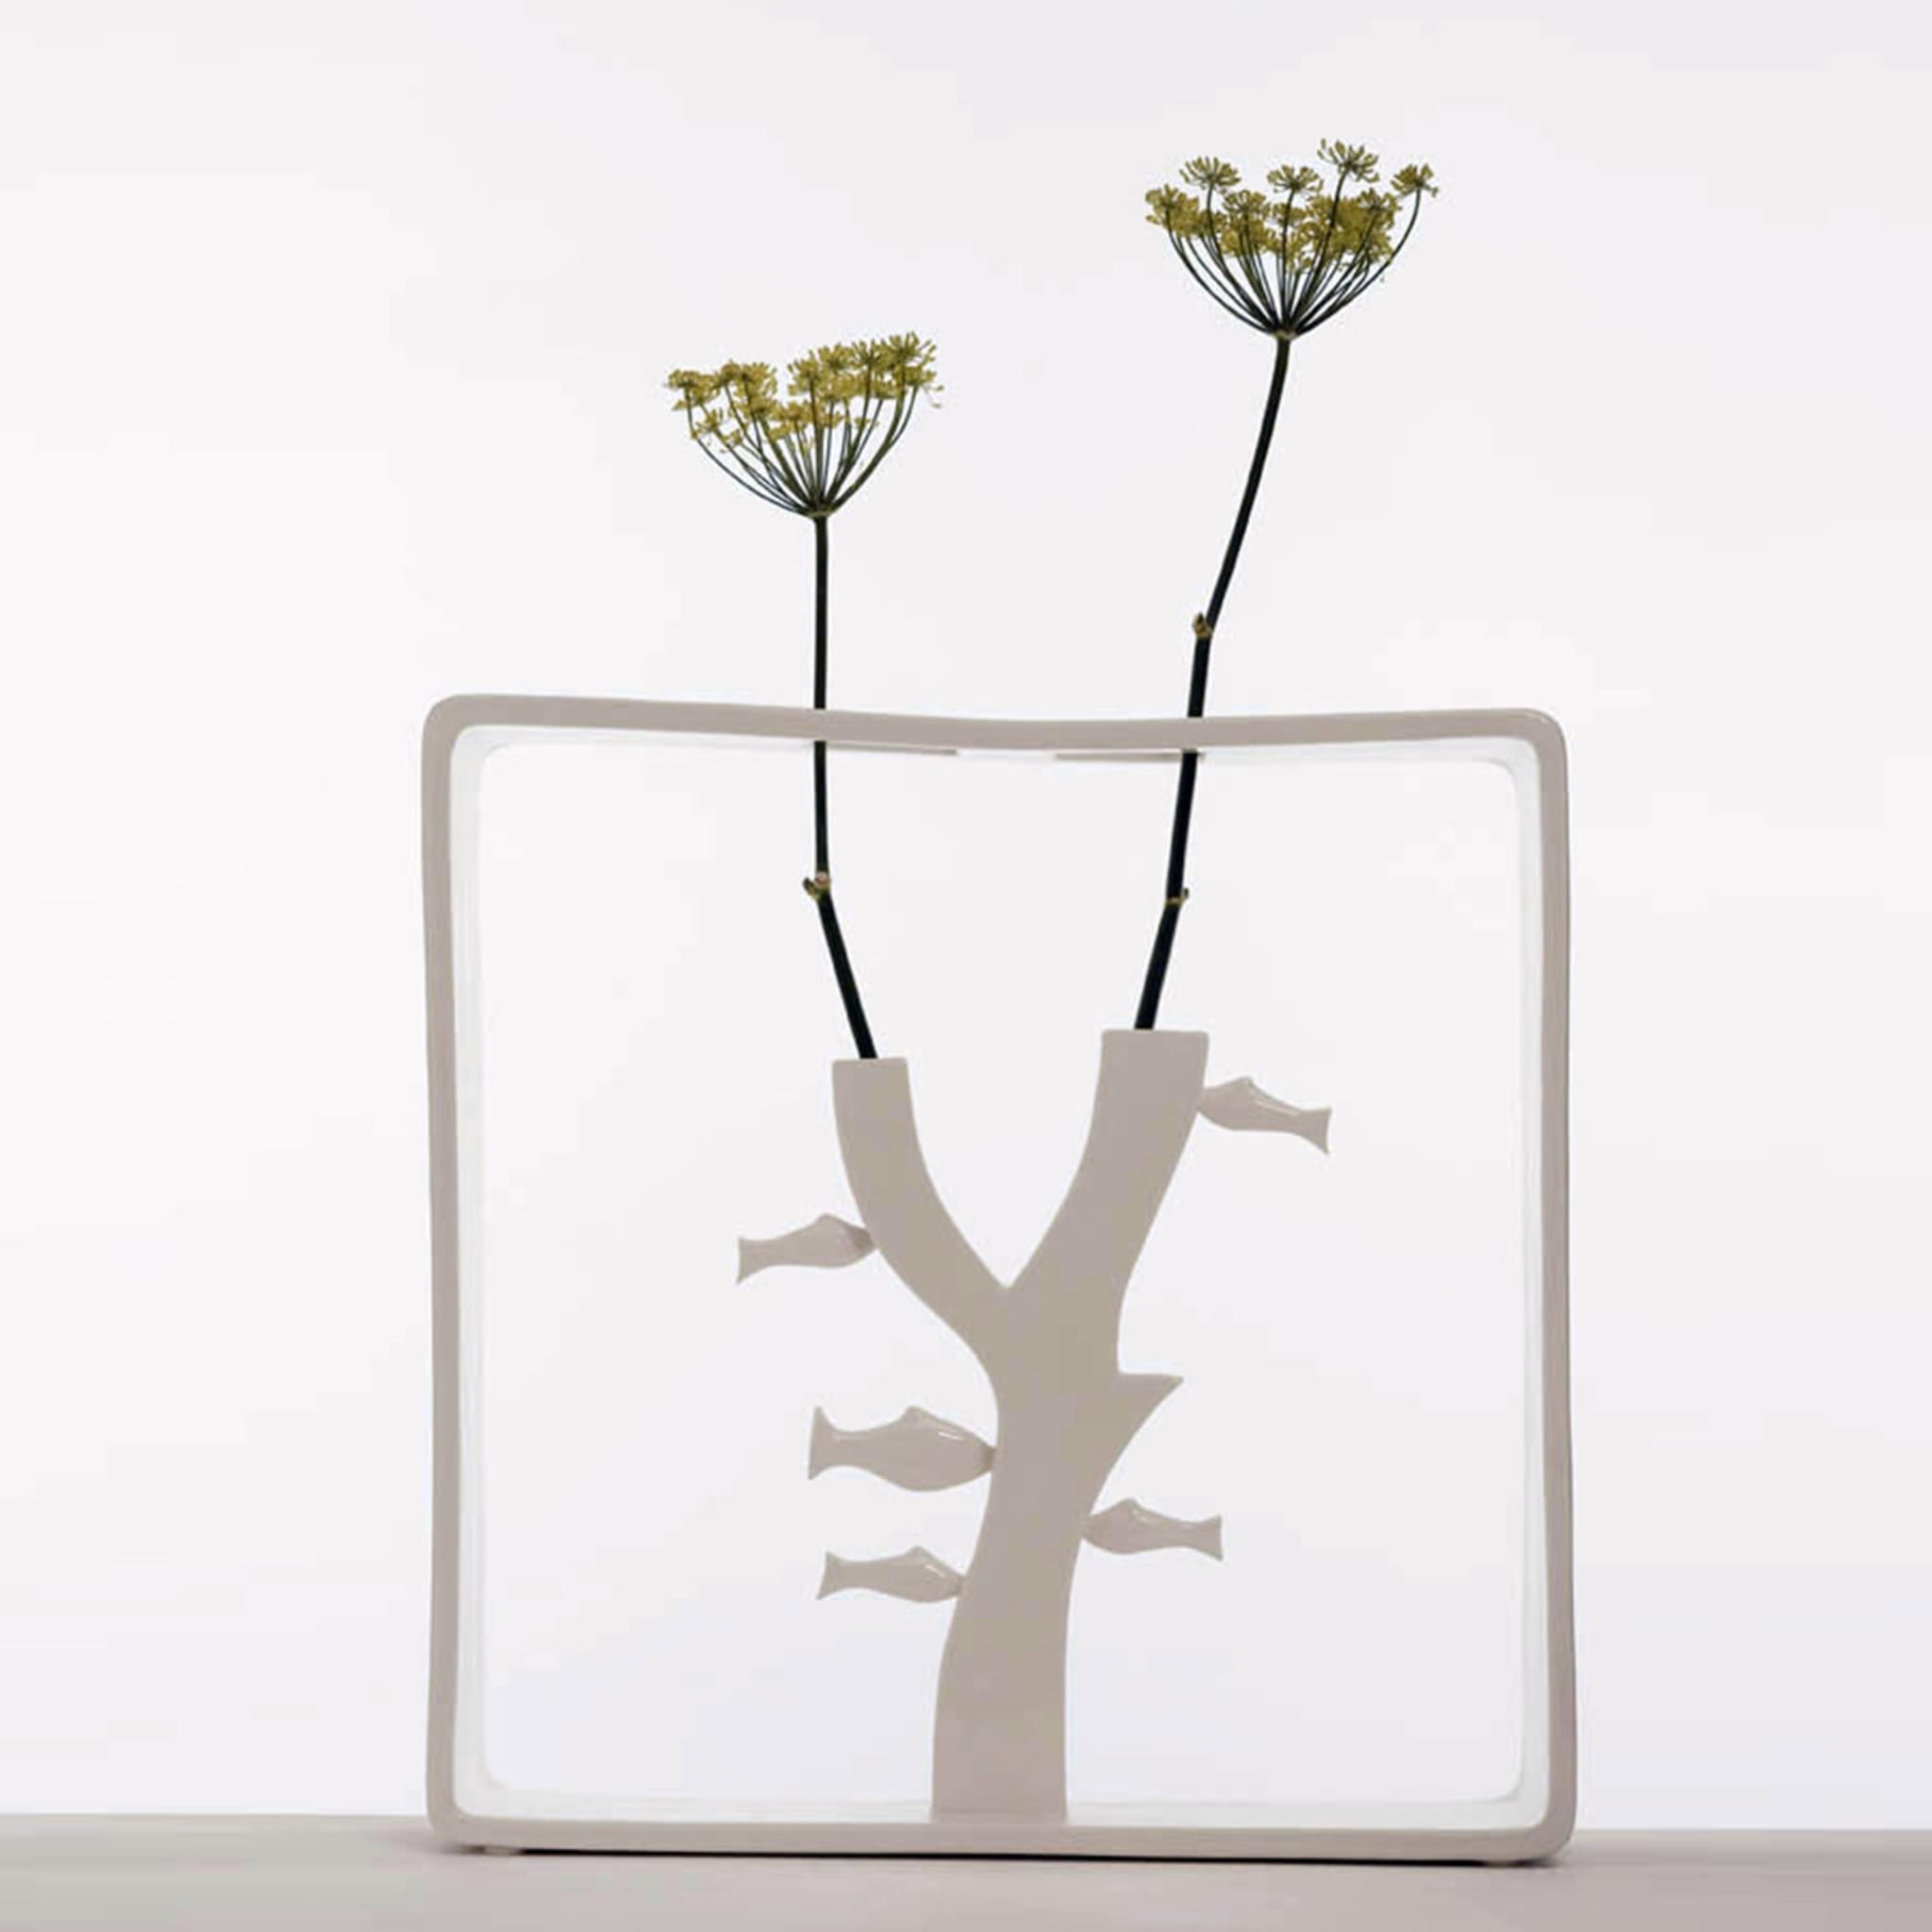 Portali 3 Vase by Andrea Branzi - Alternative view 1